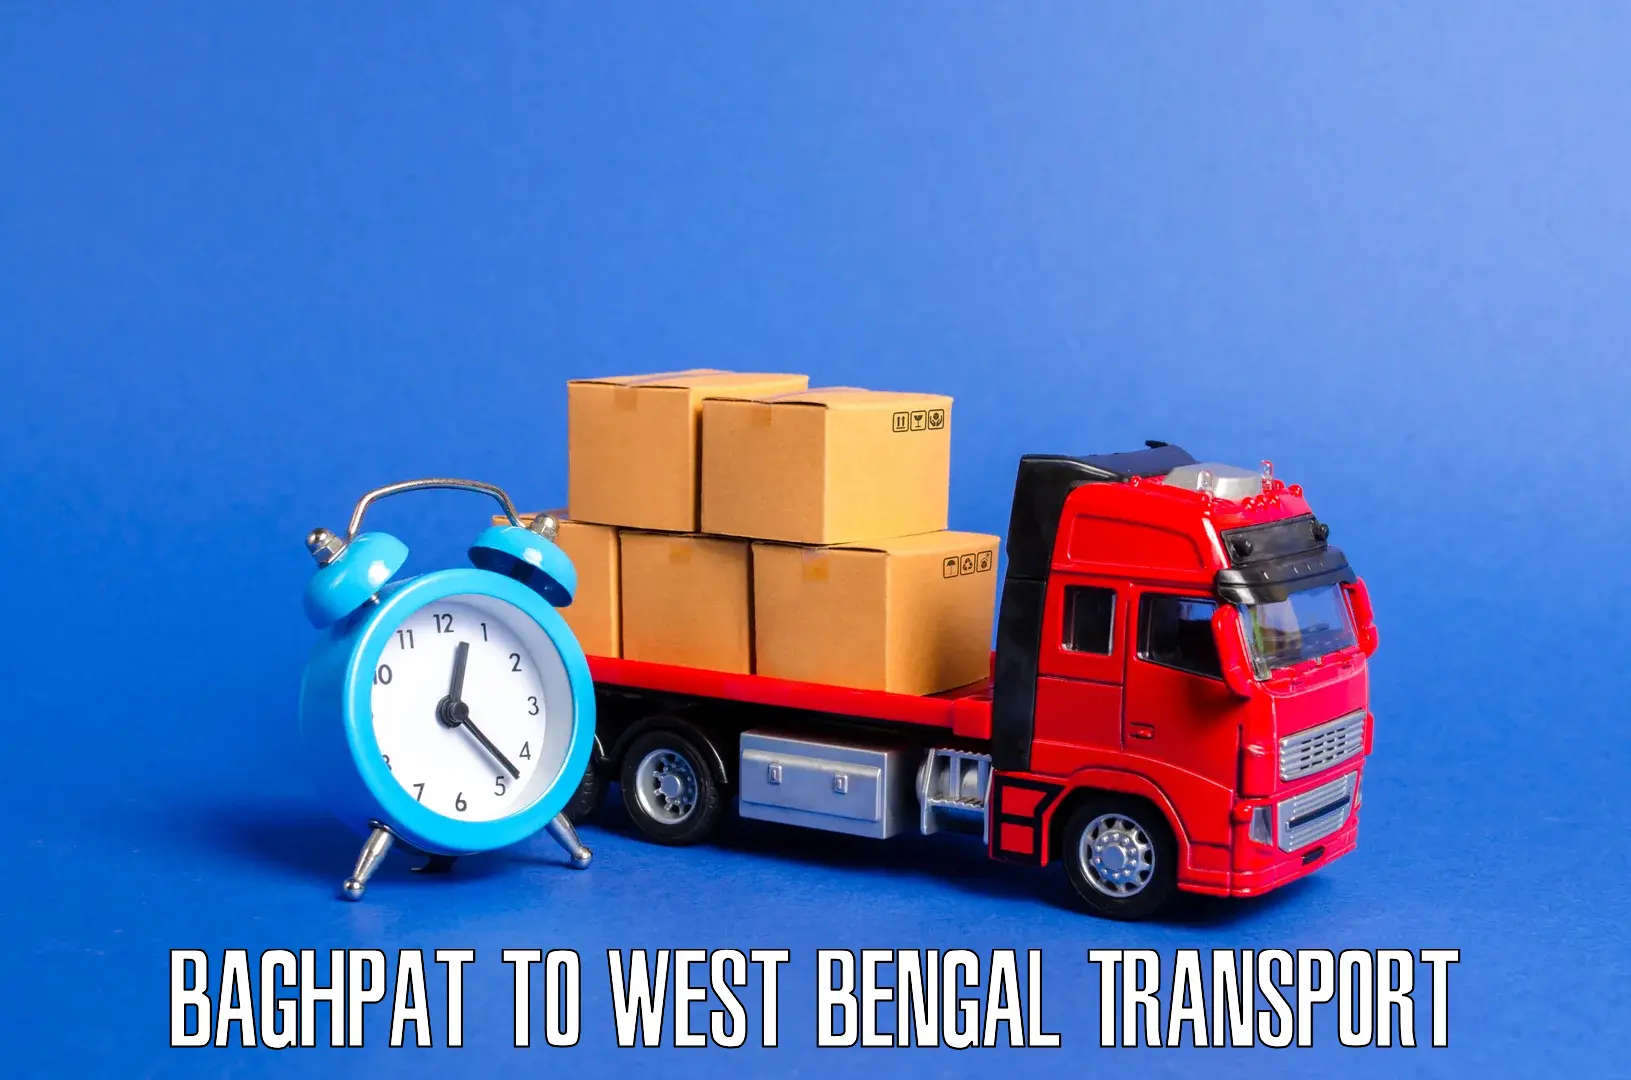 Furniture transport service Baghpat to Kolaghat